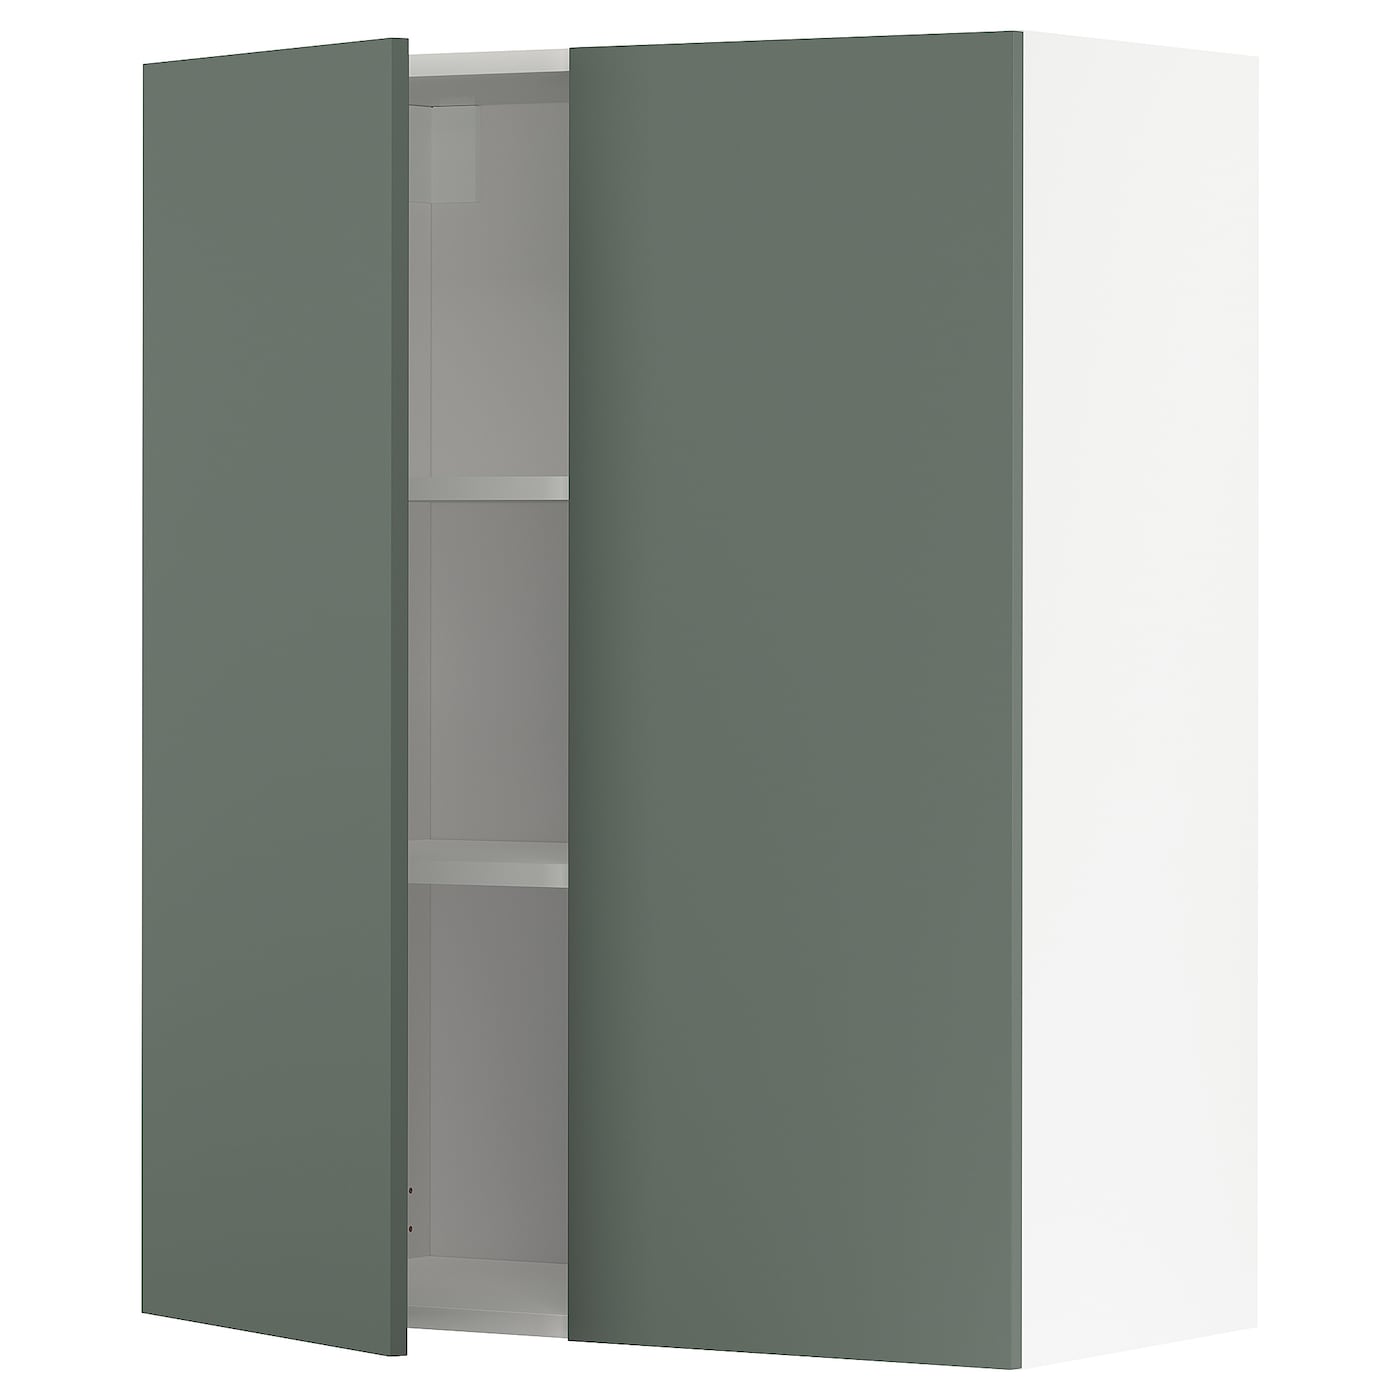 Навесной шкаф с полкой - METOD IKEA/ МЕТОД ИКЕА, 100х80 см, белый/темно-зеленый